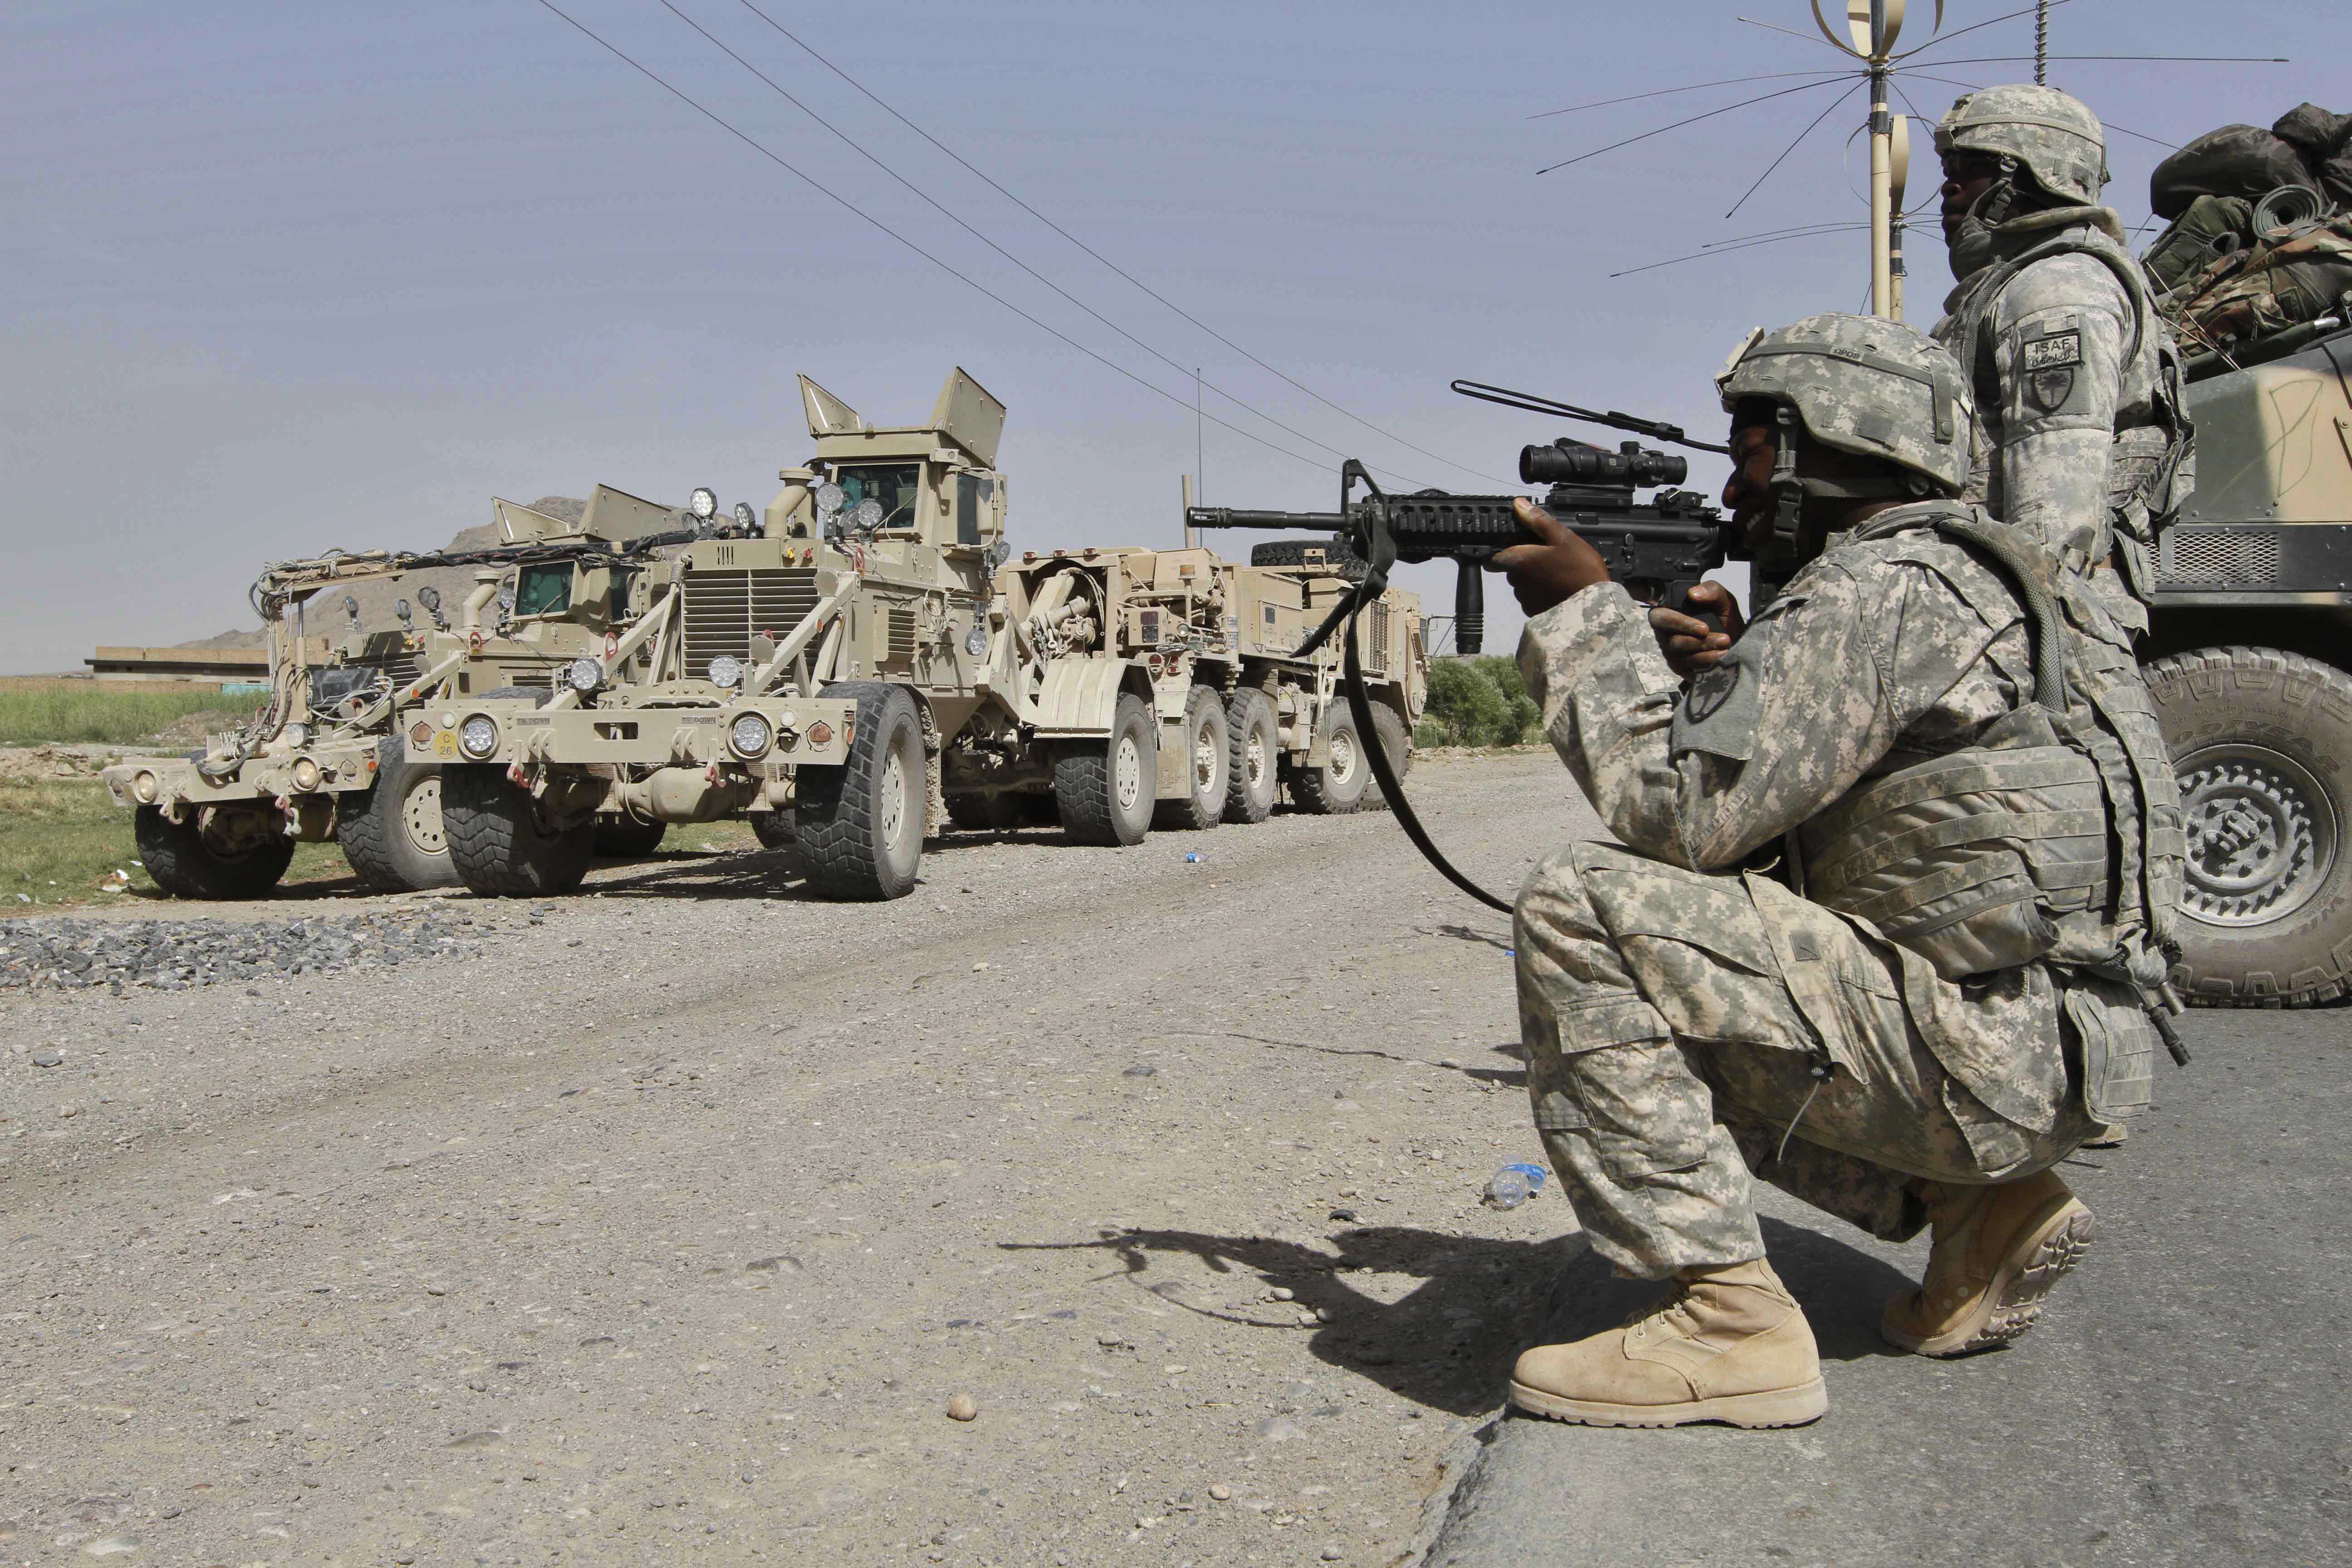 Soldat, Krig, mord, USA, Afghanistan